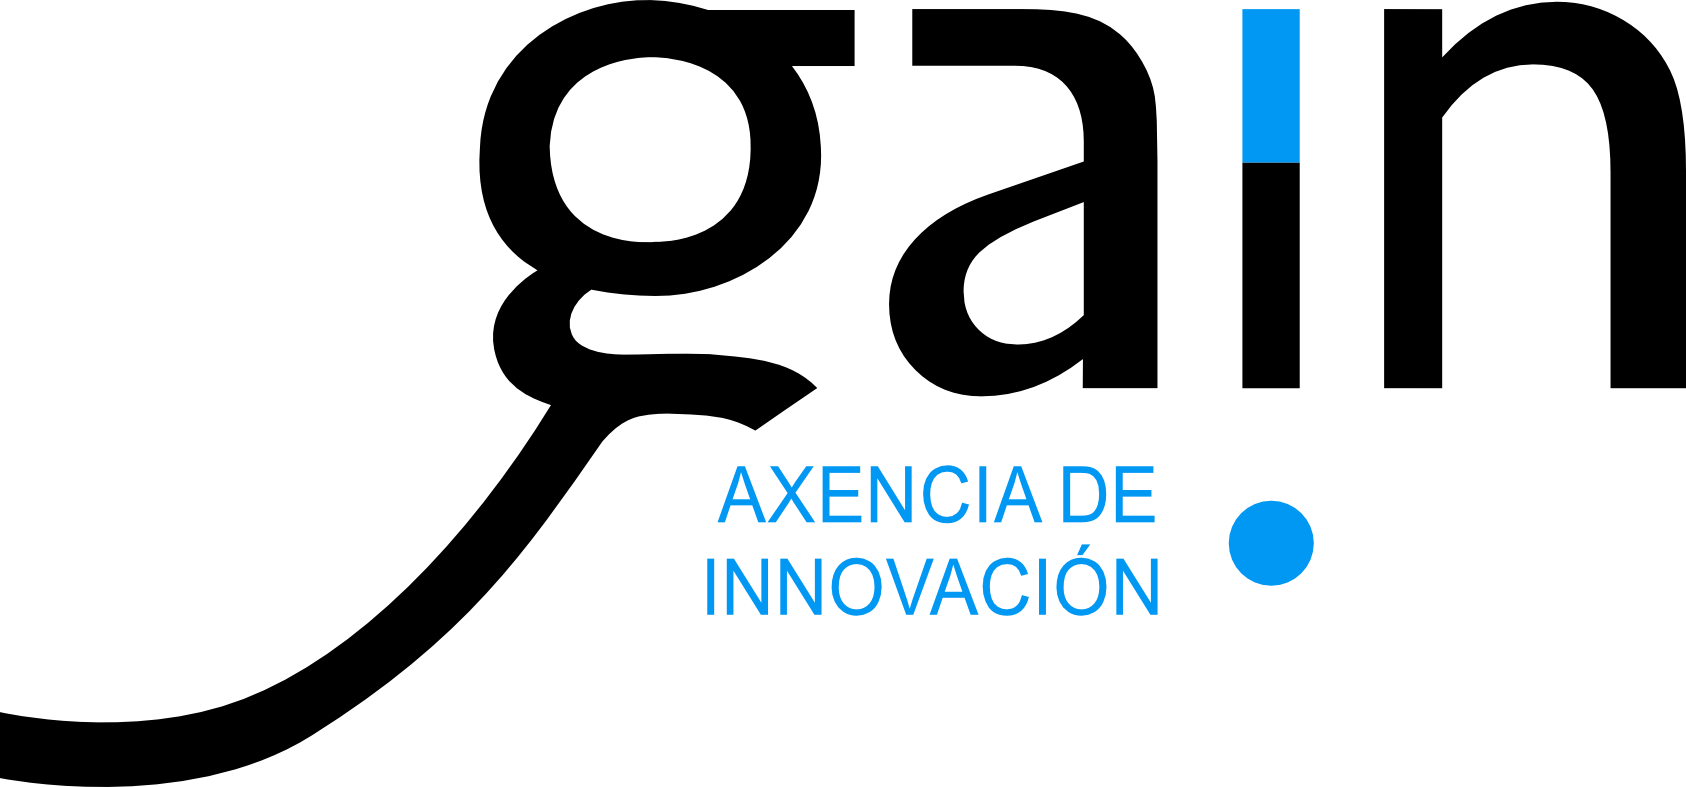 Axencia Galega de Innovación - GAIN